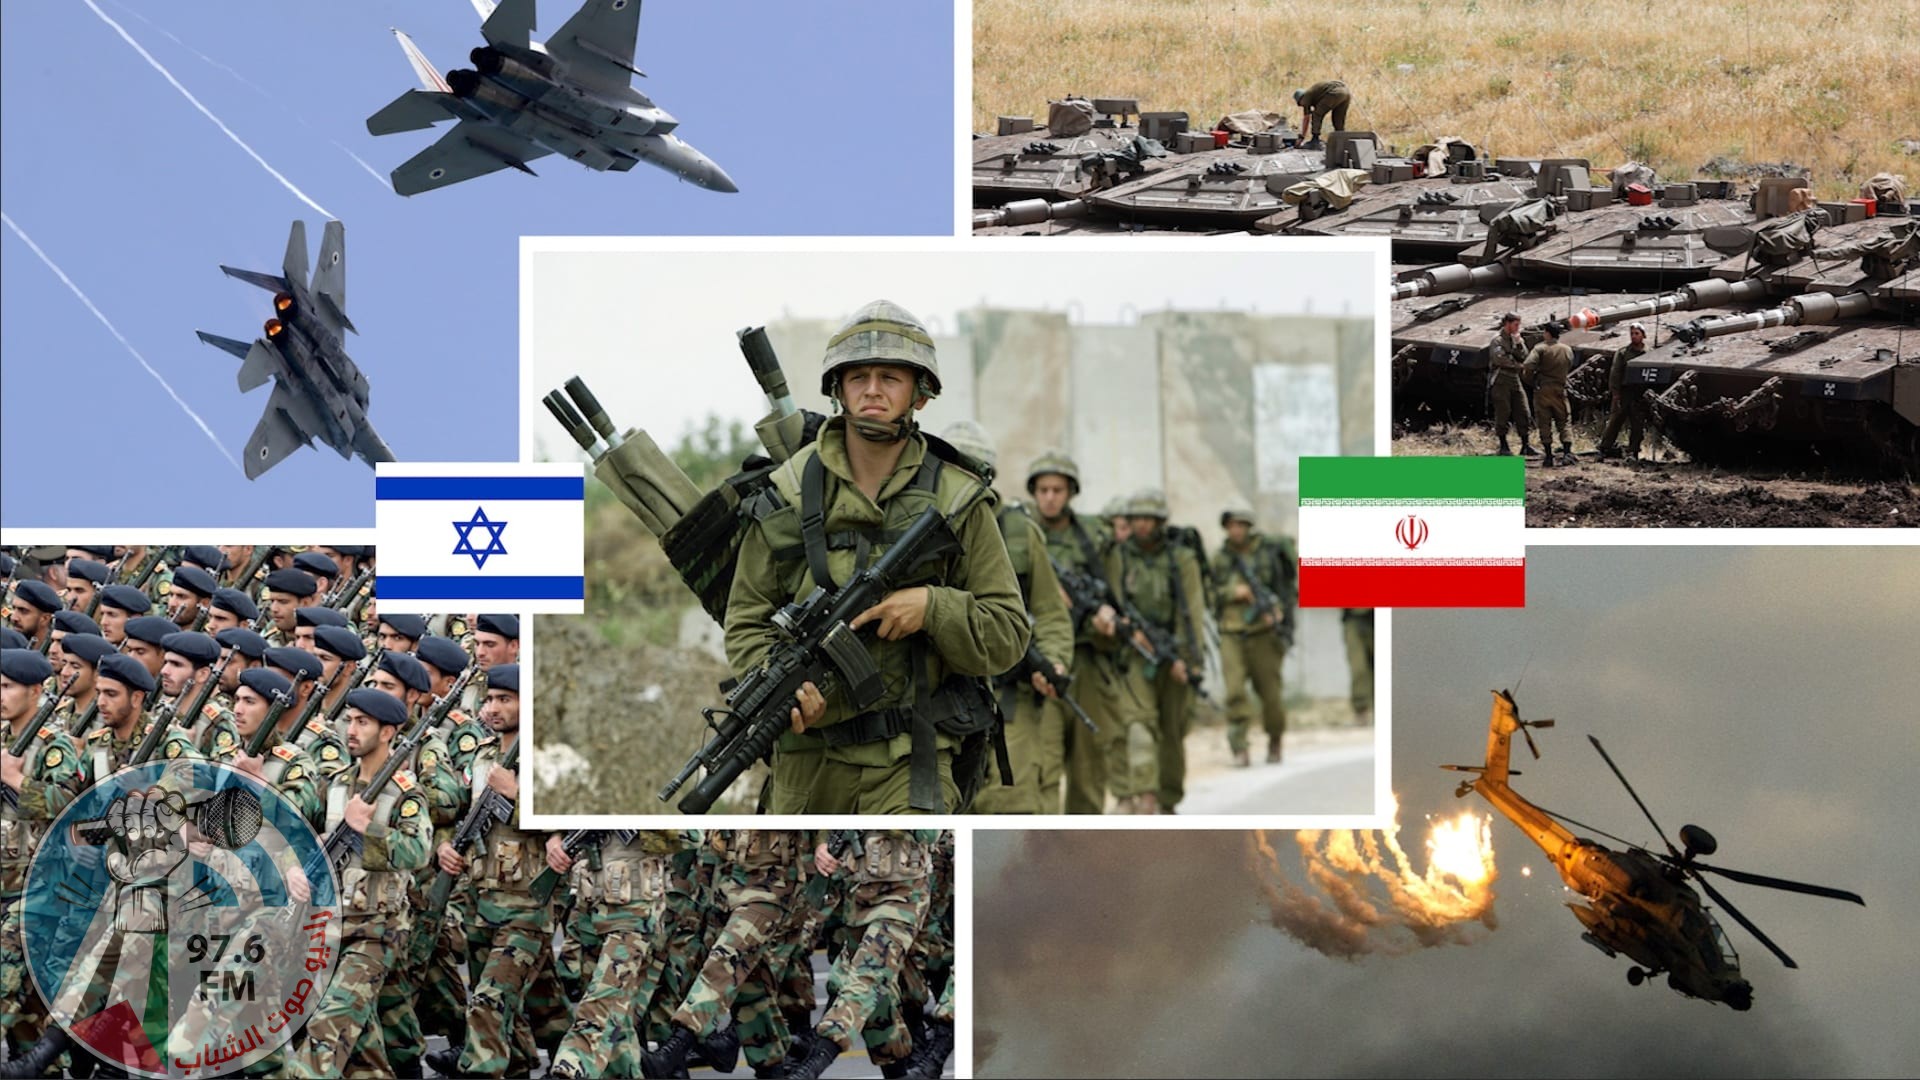 مقارنة بين الجيش الإسرائيلي ونظيره الإيراني وفق إحصائية 2021